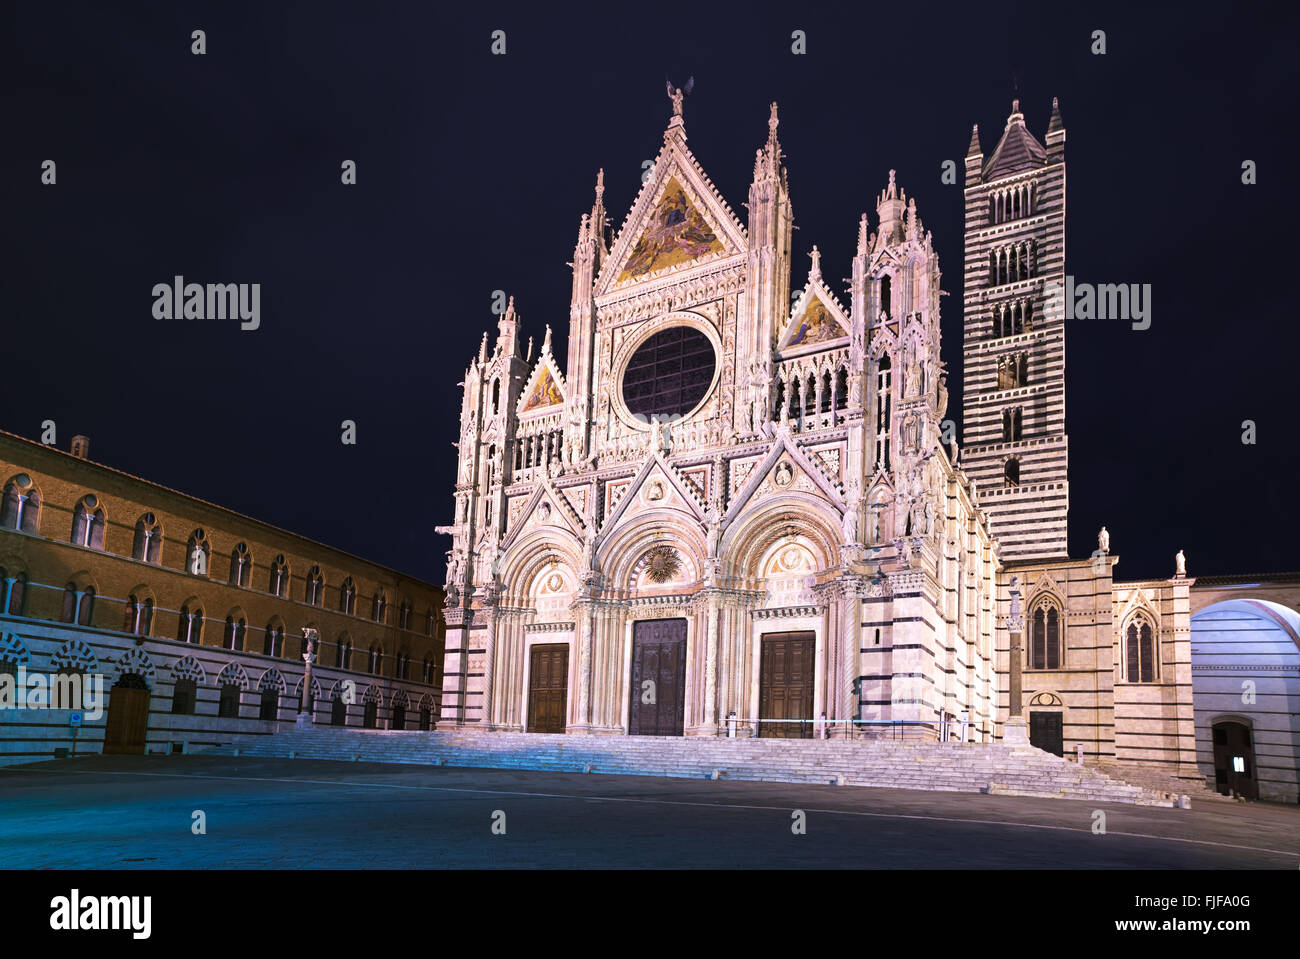 Cattedrale di Siena come punto di riferimento noto come Duomo, notte fotografia. Toscana, Italia, Europa. Foto Stock